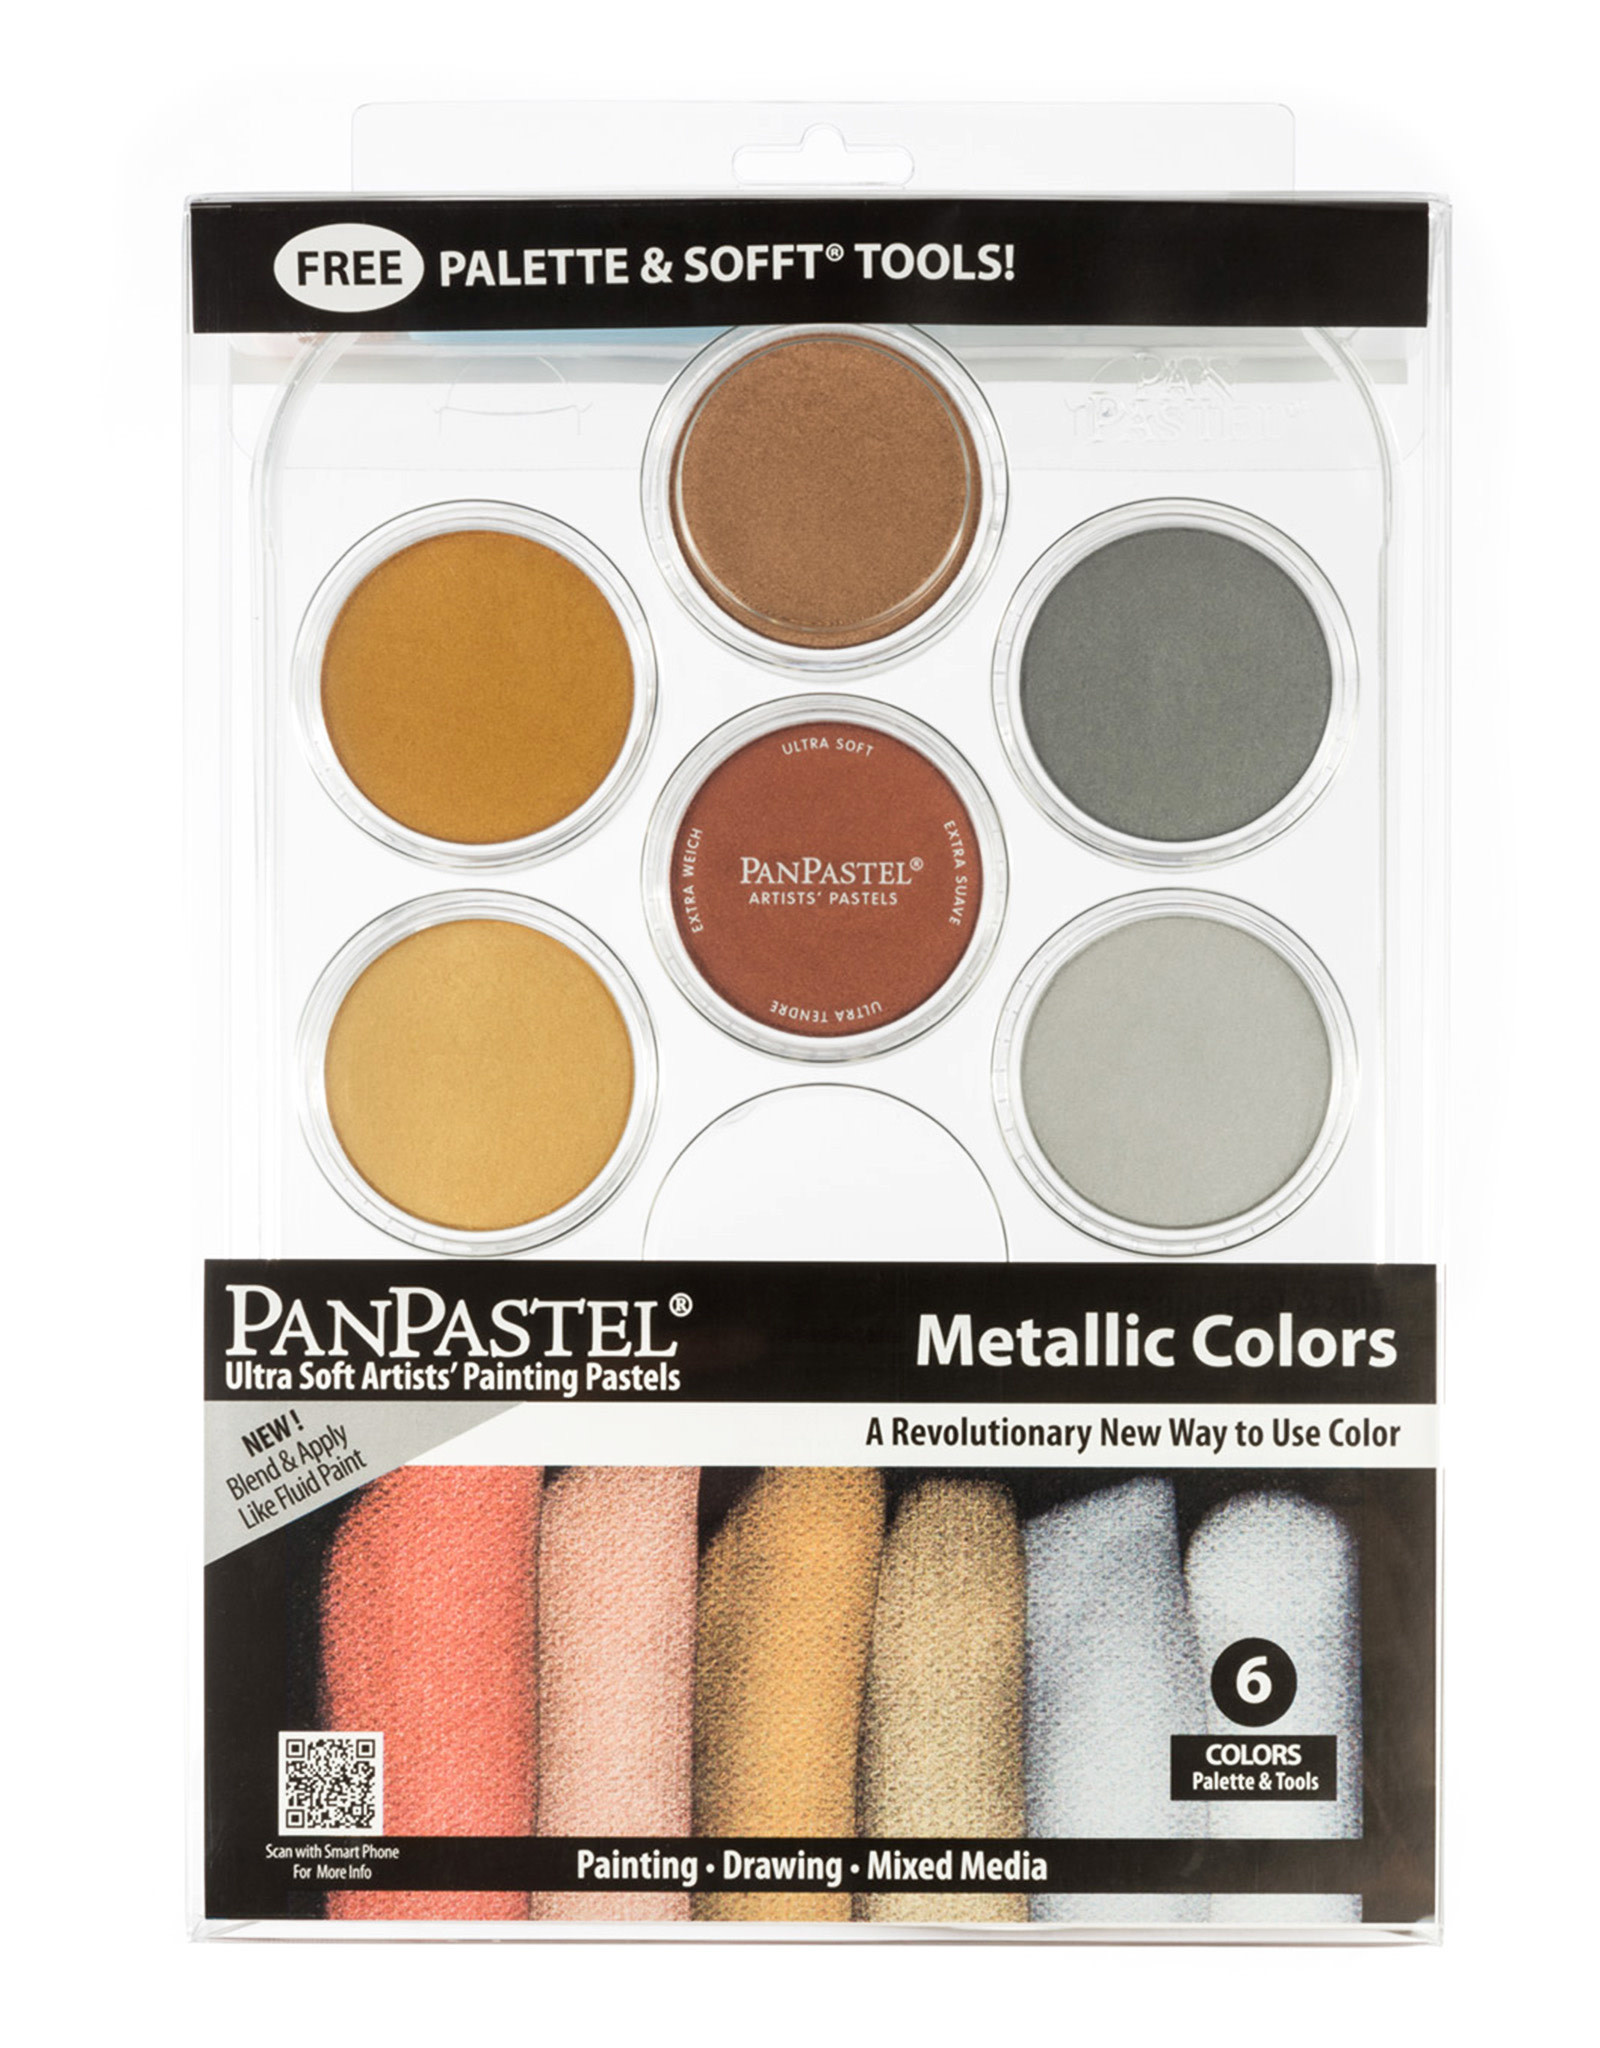 Panpastel PanPastel Metallic Colors, Set of 6 Colors